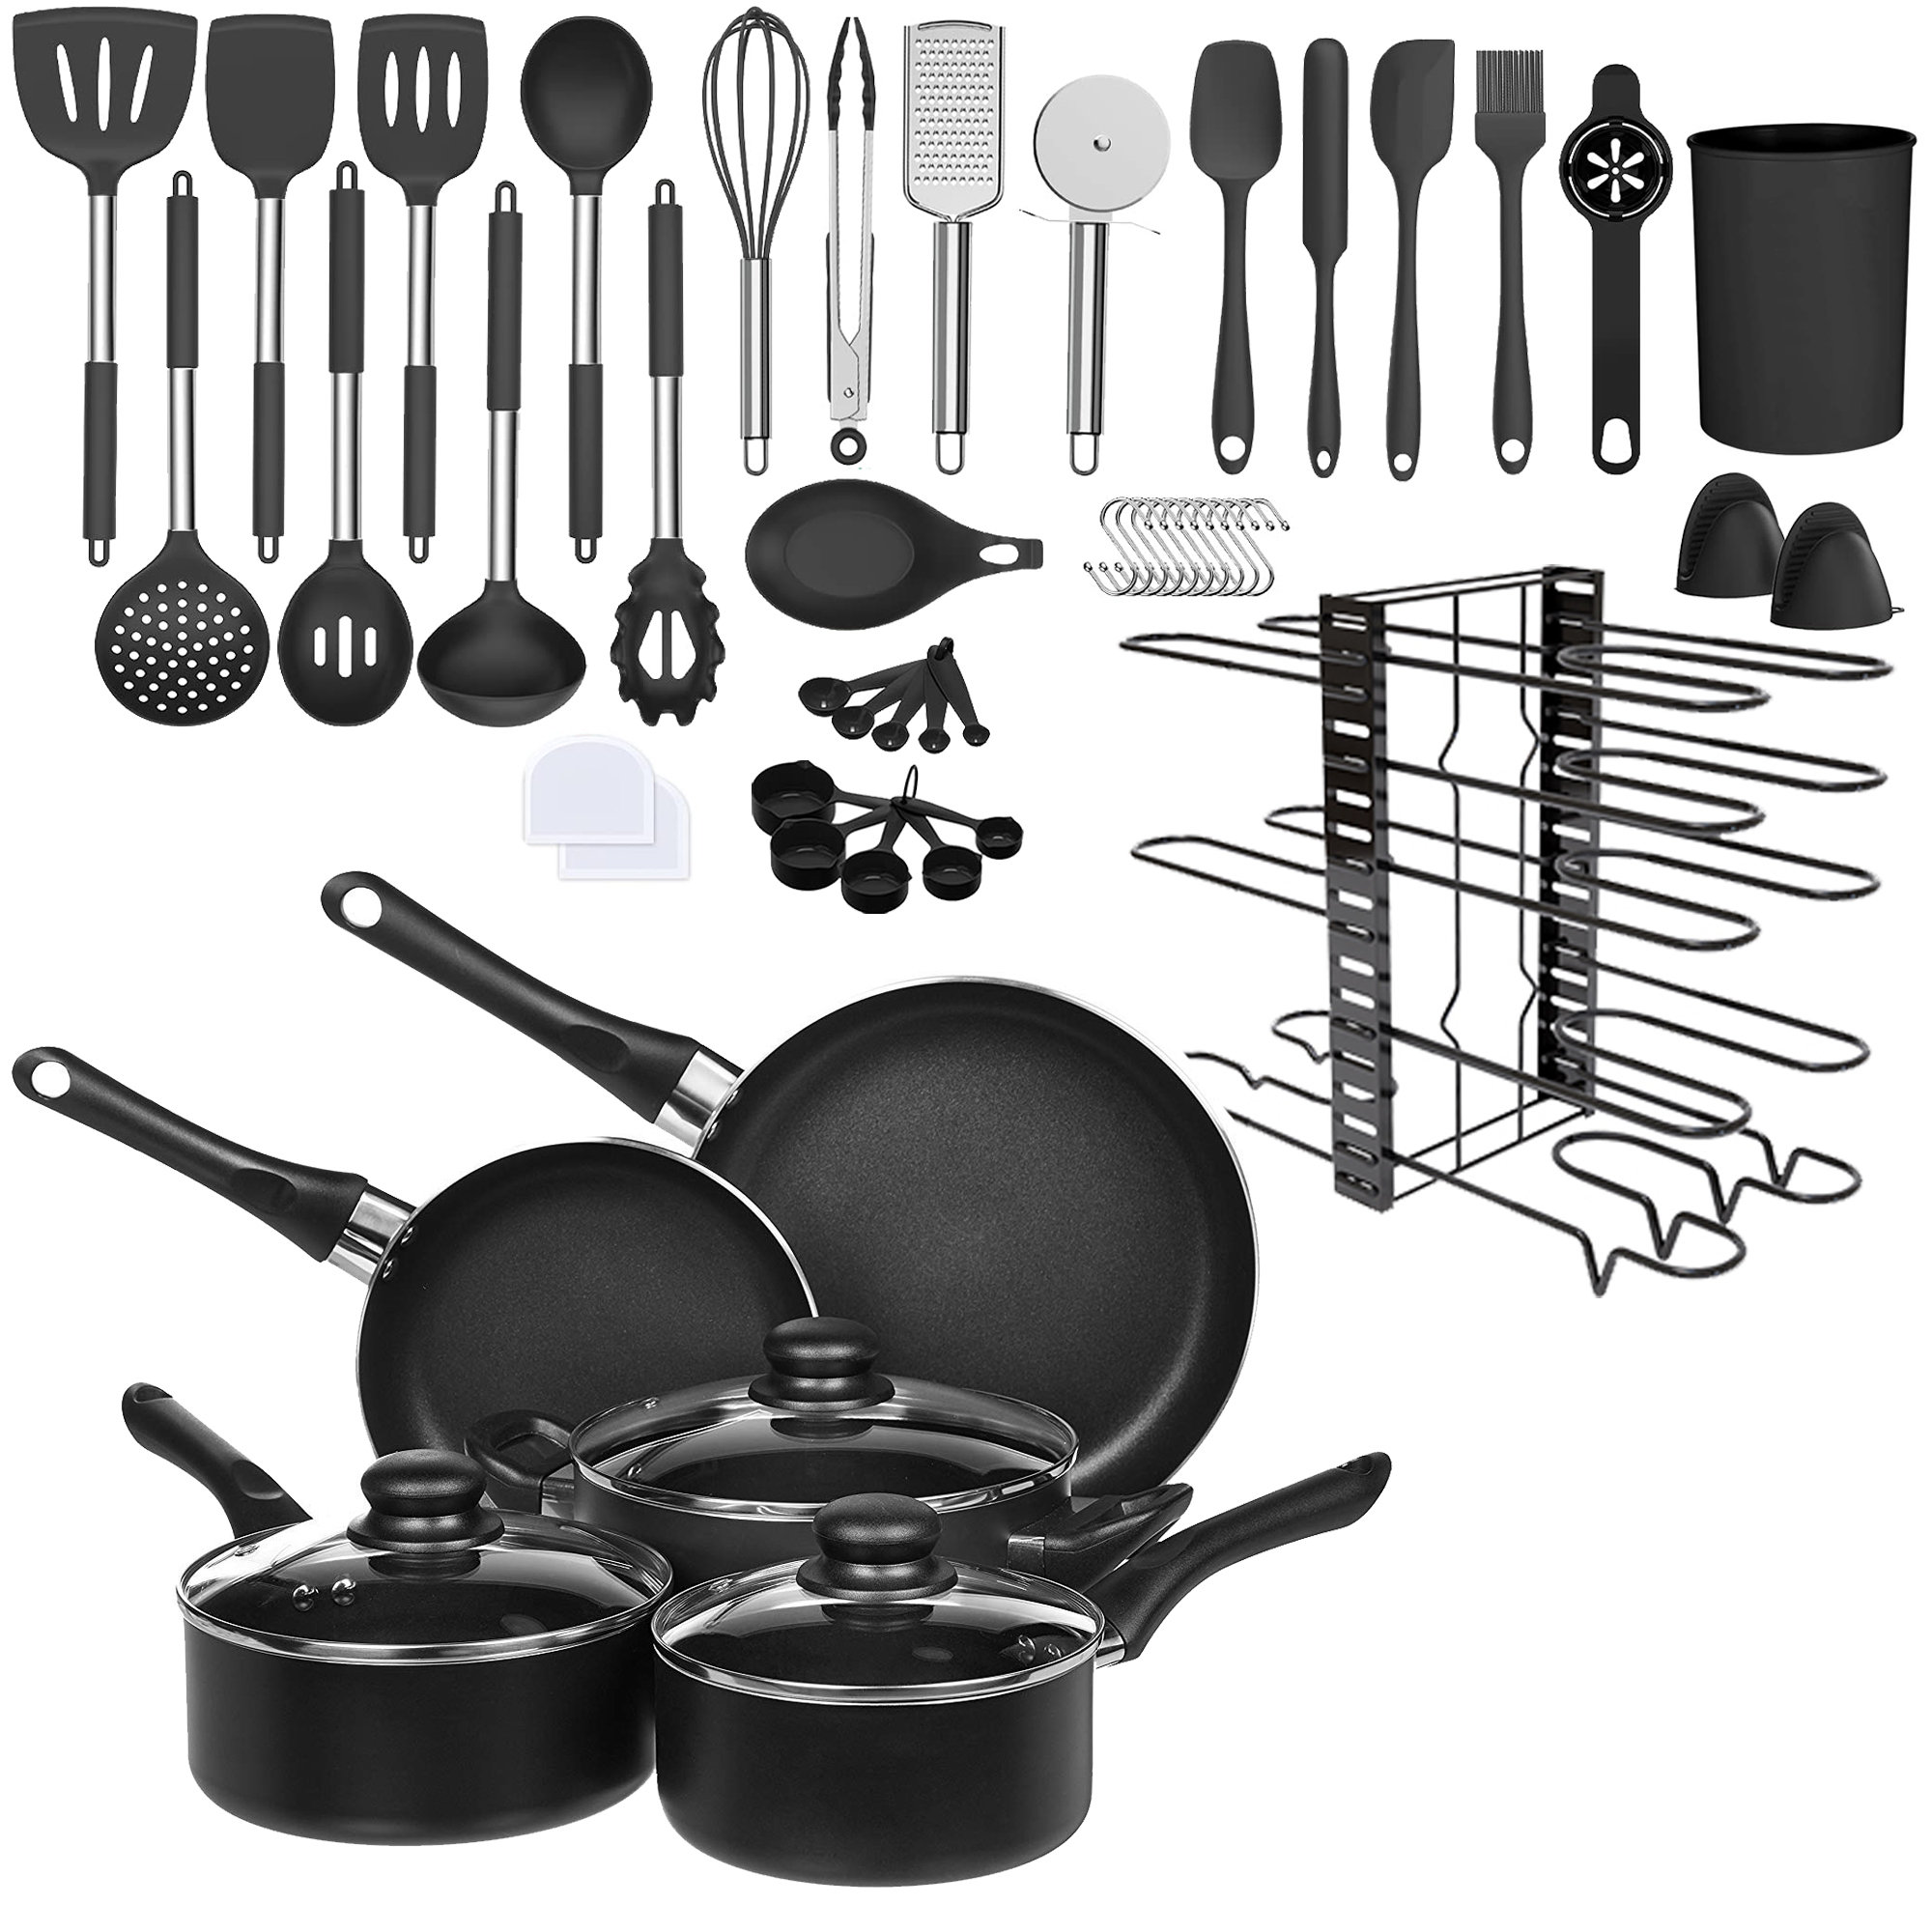 https://assets.wfcdn.com/im/36203306/compr-r85/2494/249449679/32-piece-non-stick-aluminum-cookware-set.jpg